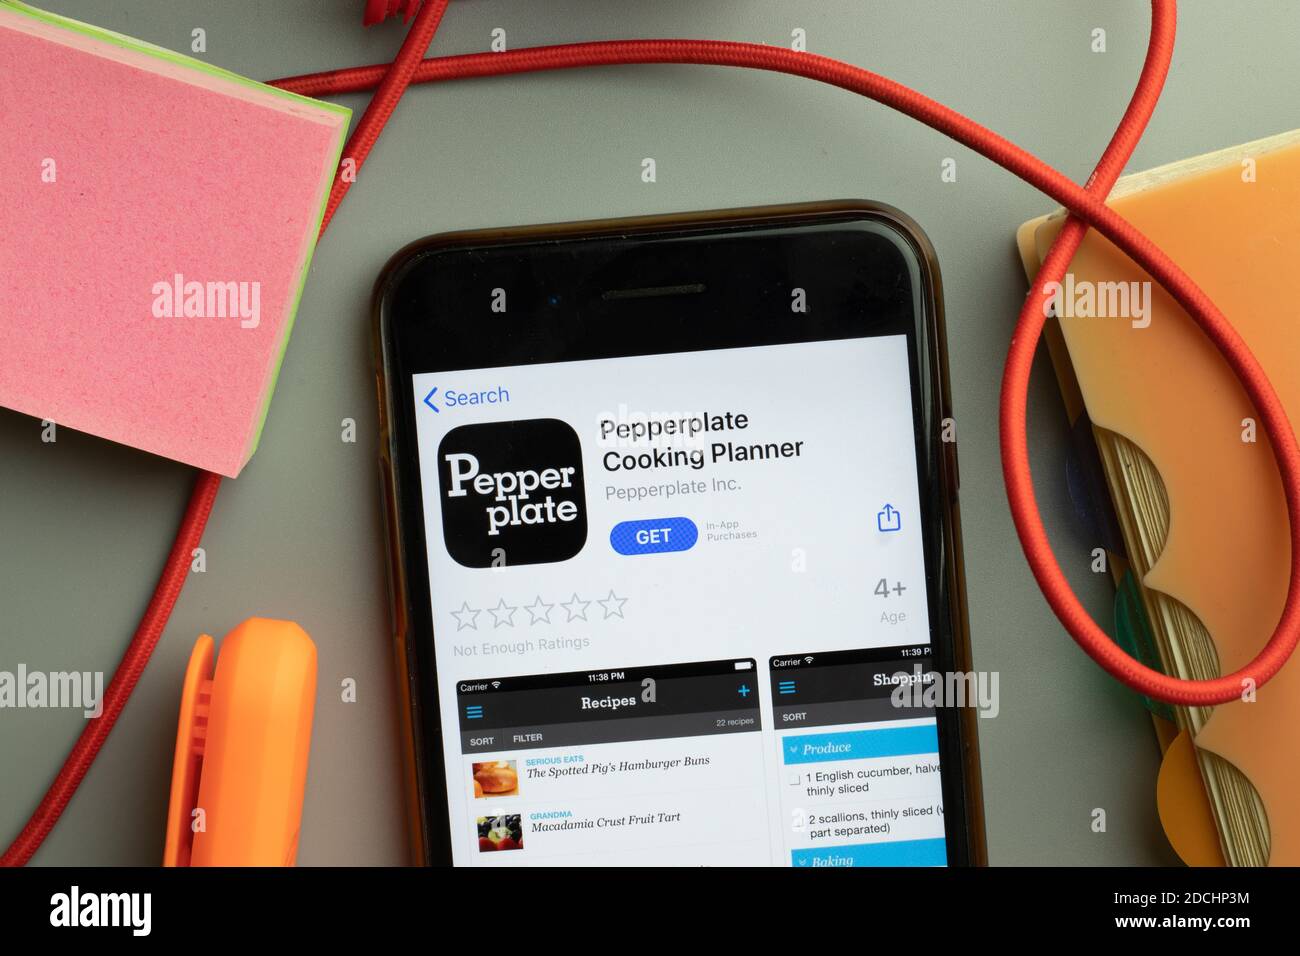 Nueva York, Estados Unidos - 7 de noviembre de 2020: Pepperplate Cooking Planner app store logo on phone screen, ilustrative Editorial. Foto de stock